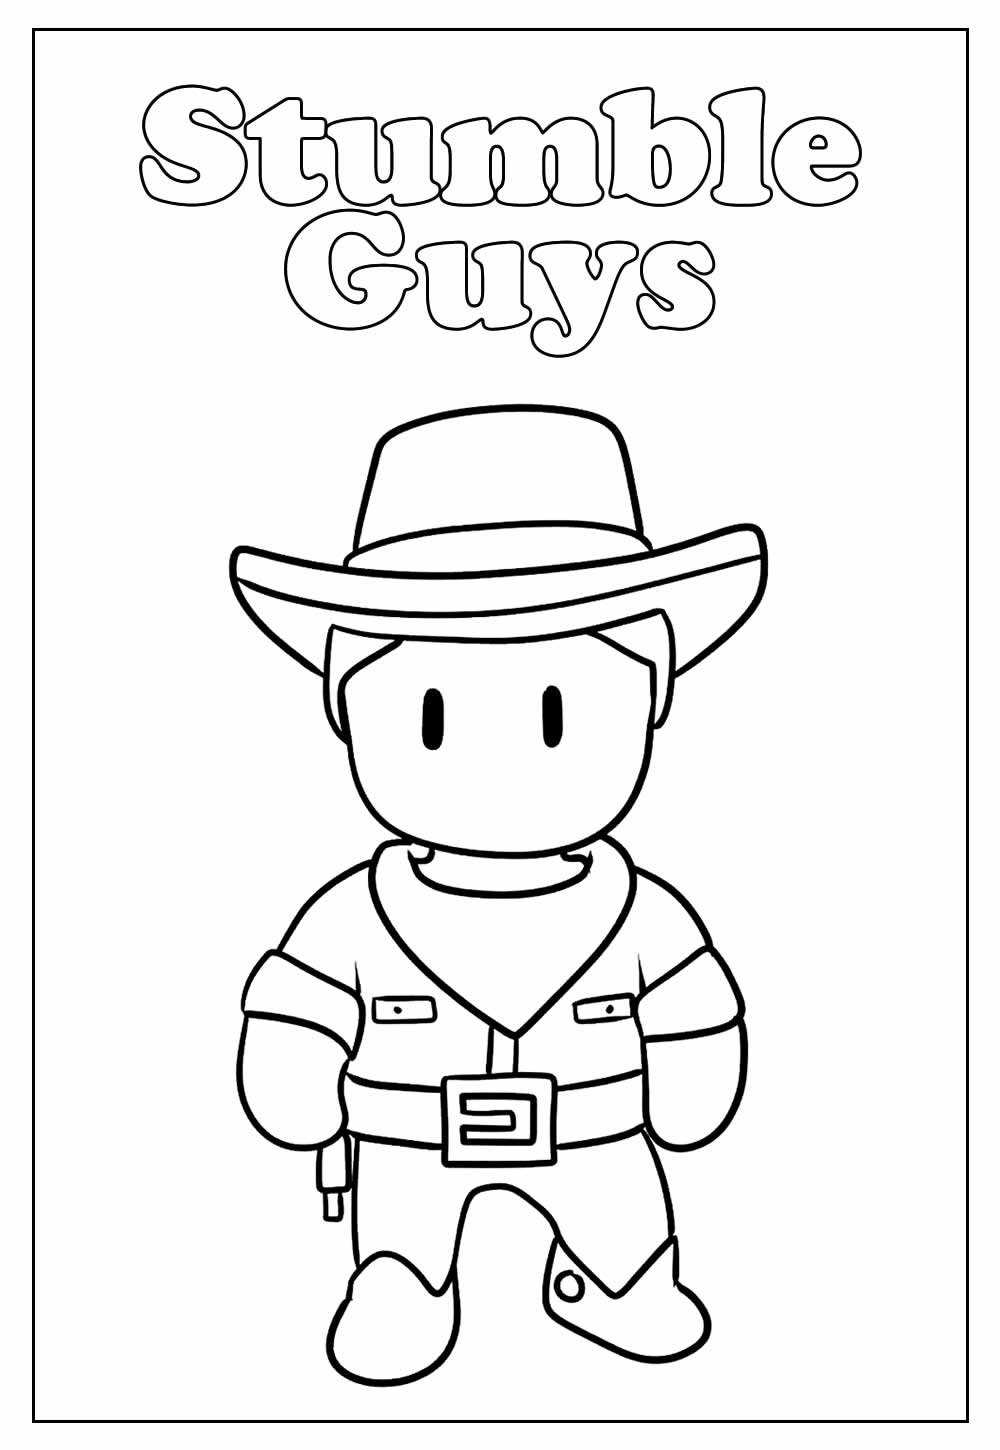 Desenho Educativo de Stumble Guys para colorir